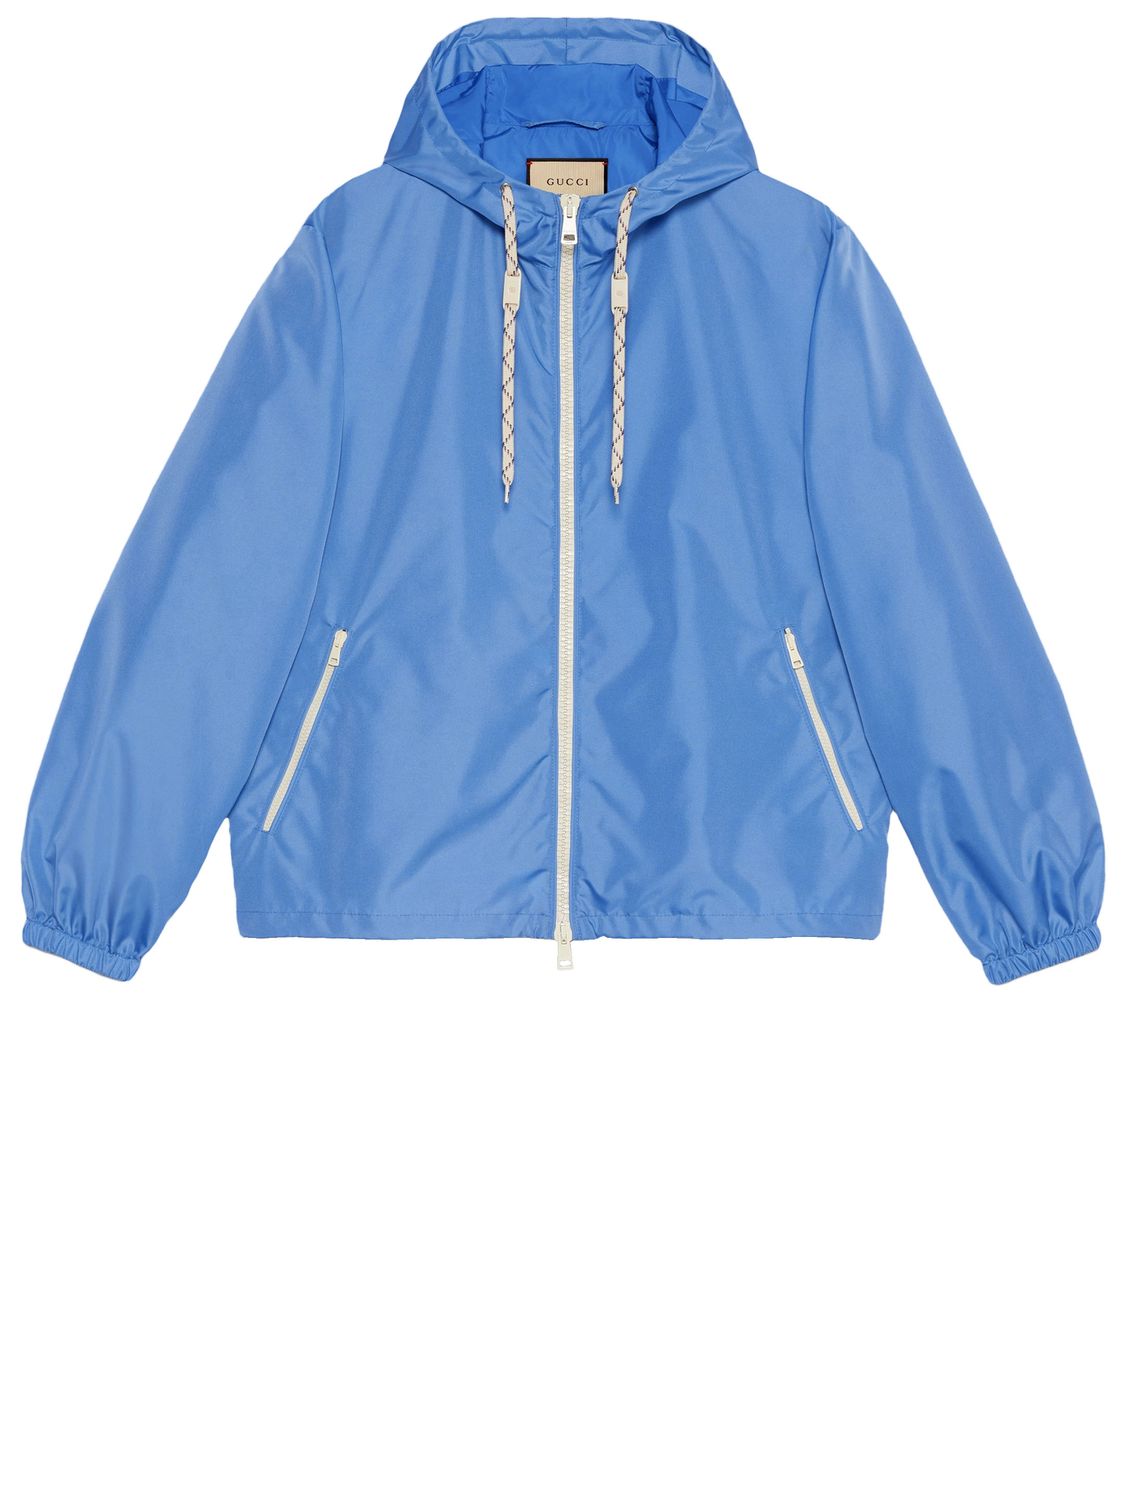 Áo khoác xanh dương nylon với chi tiết web và hình ảnh